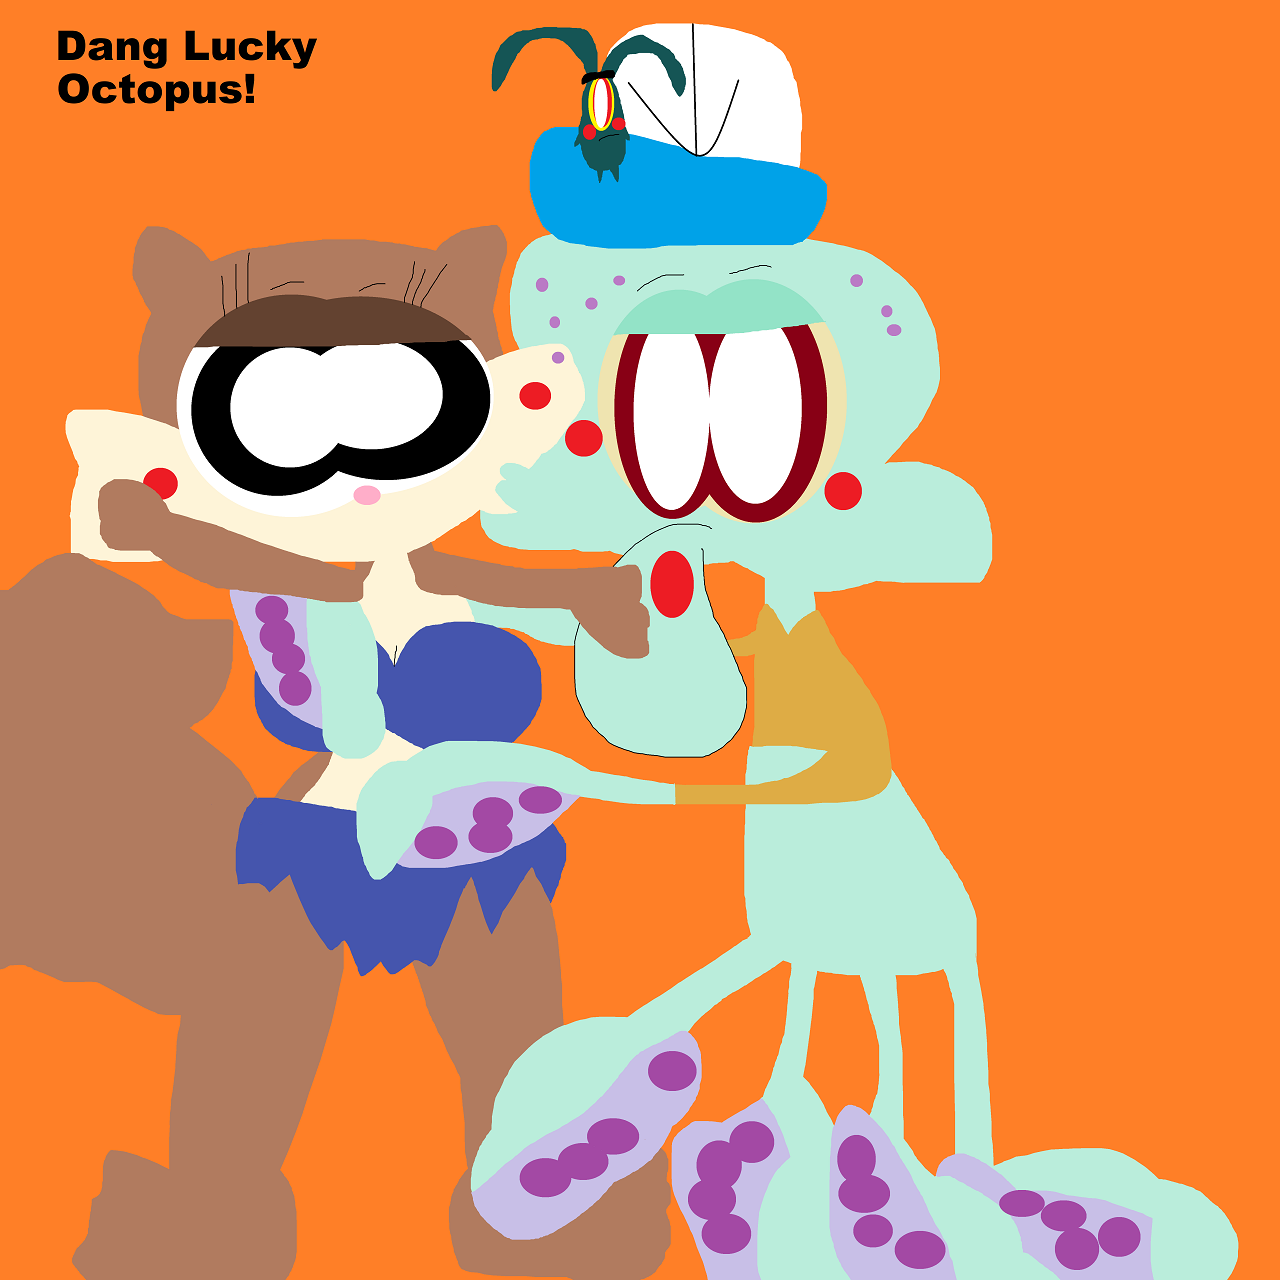 Dang Lucky Octopus by Falconlobo